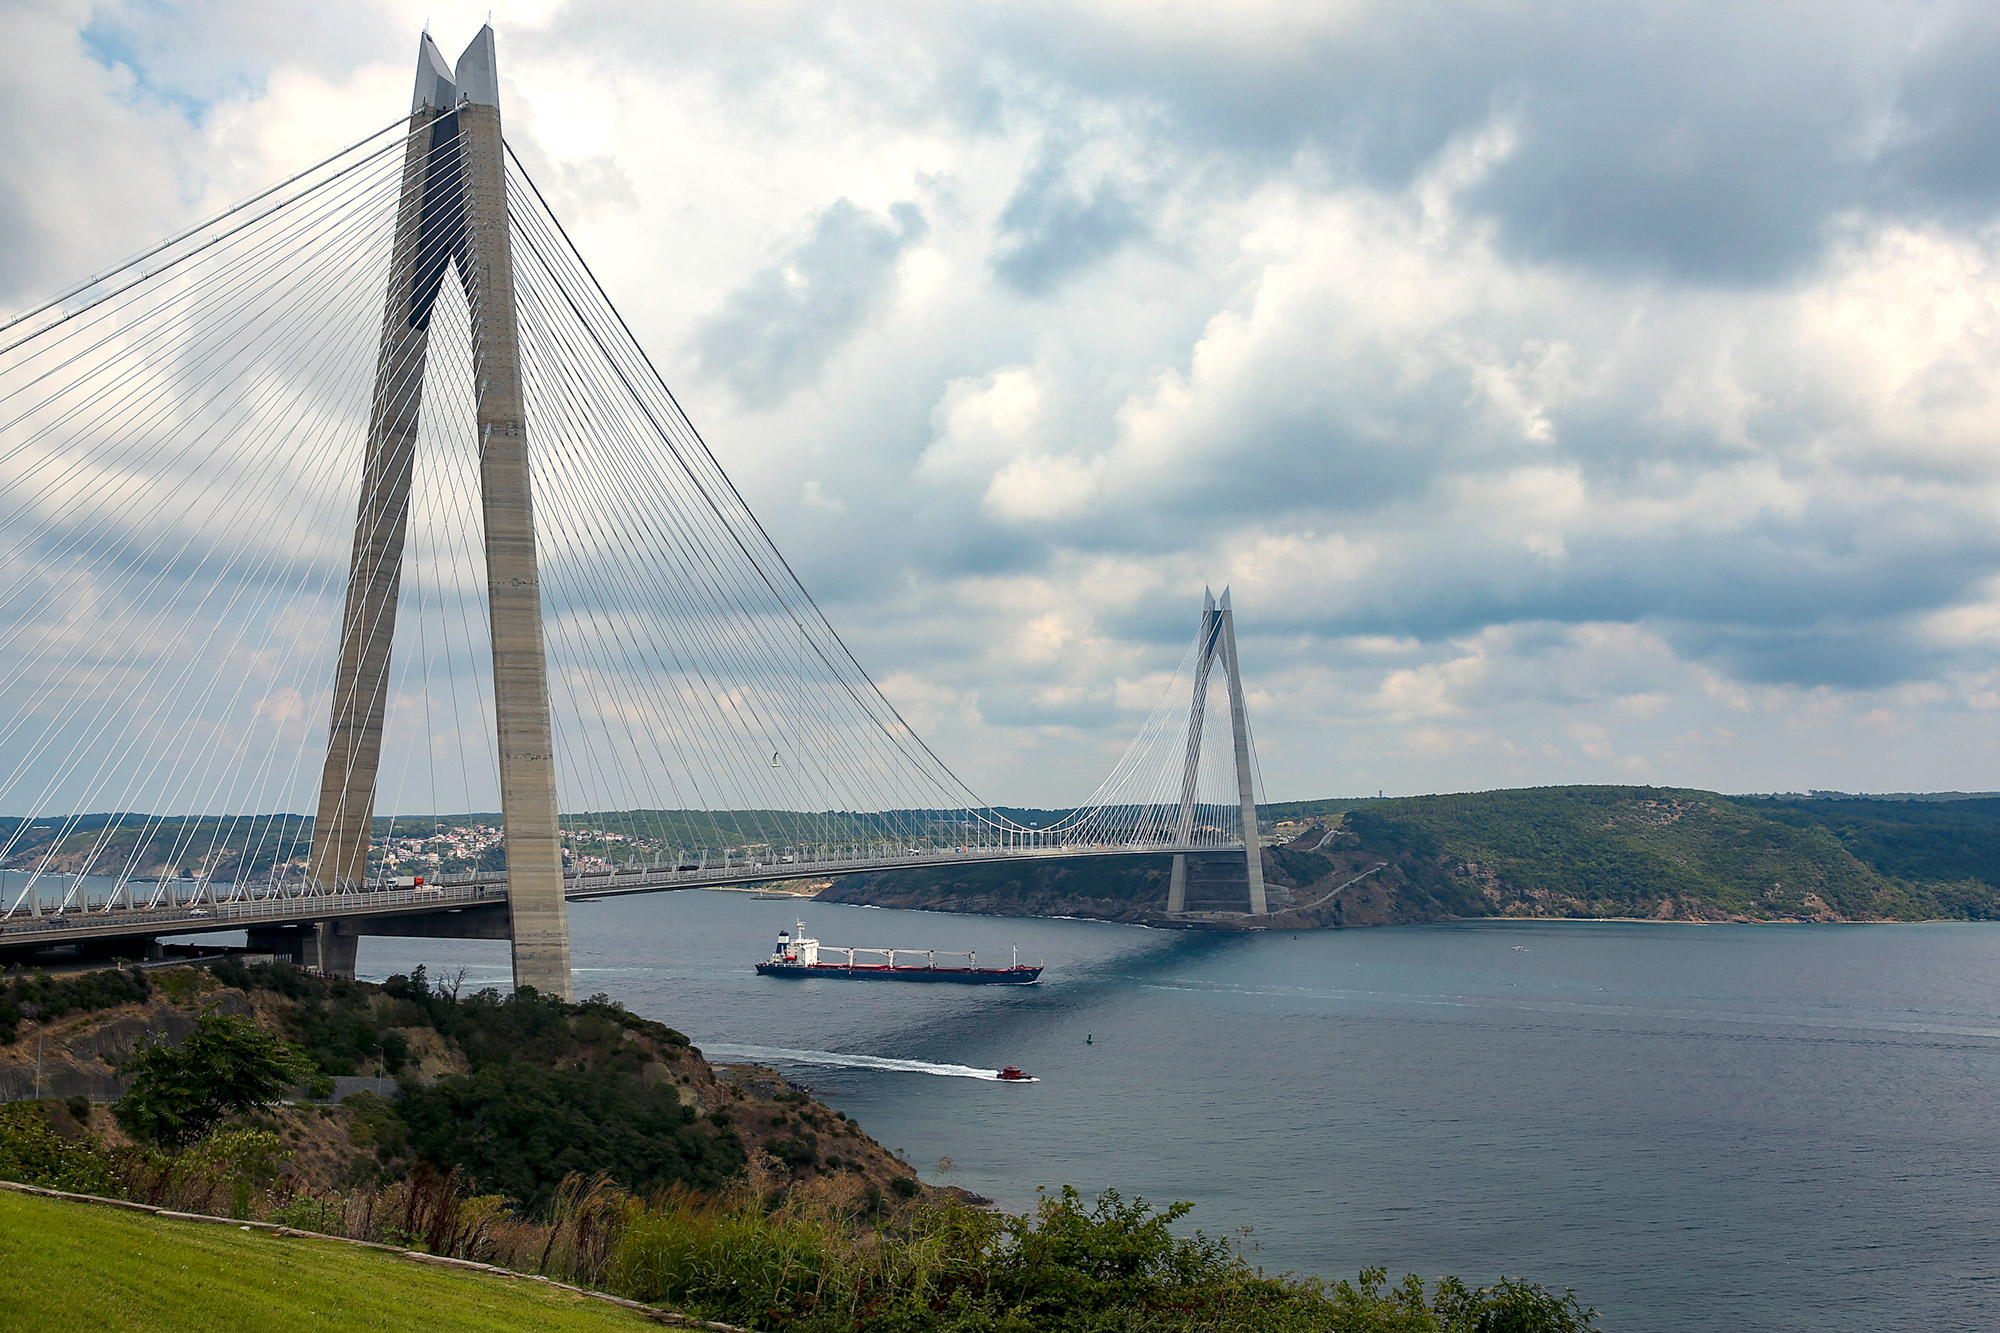 Boshporus_Straits-Yavuz-Sultan-Selim-Bridge-file-AP-Photo-Emrah-Gurel